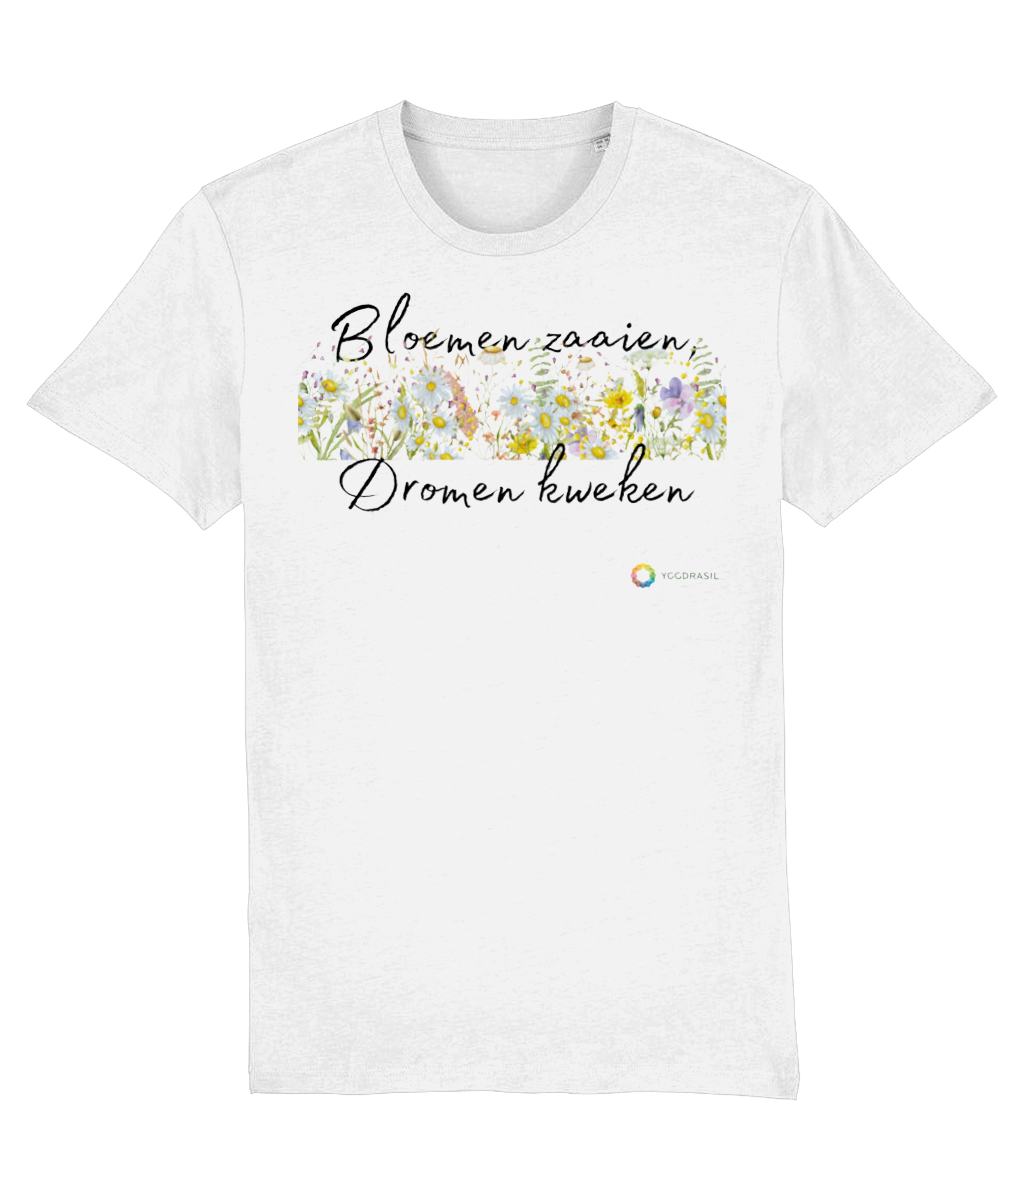 Unisex T-shirt, Bloemen zaaien, dromen kweken